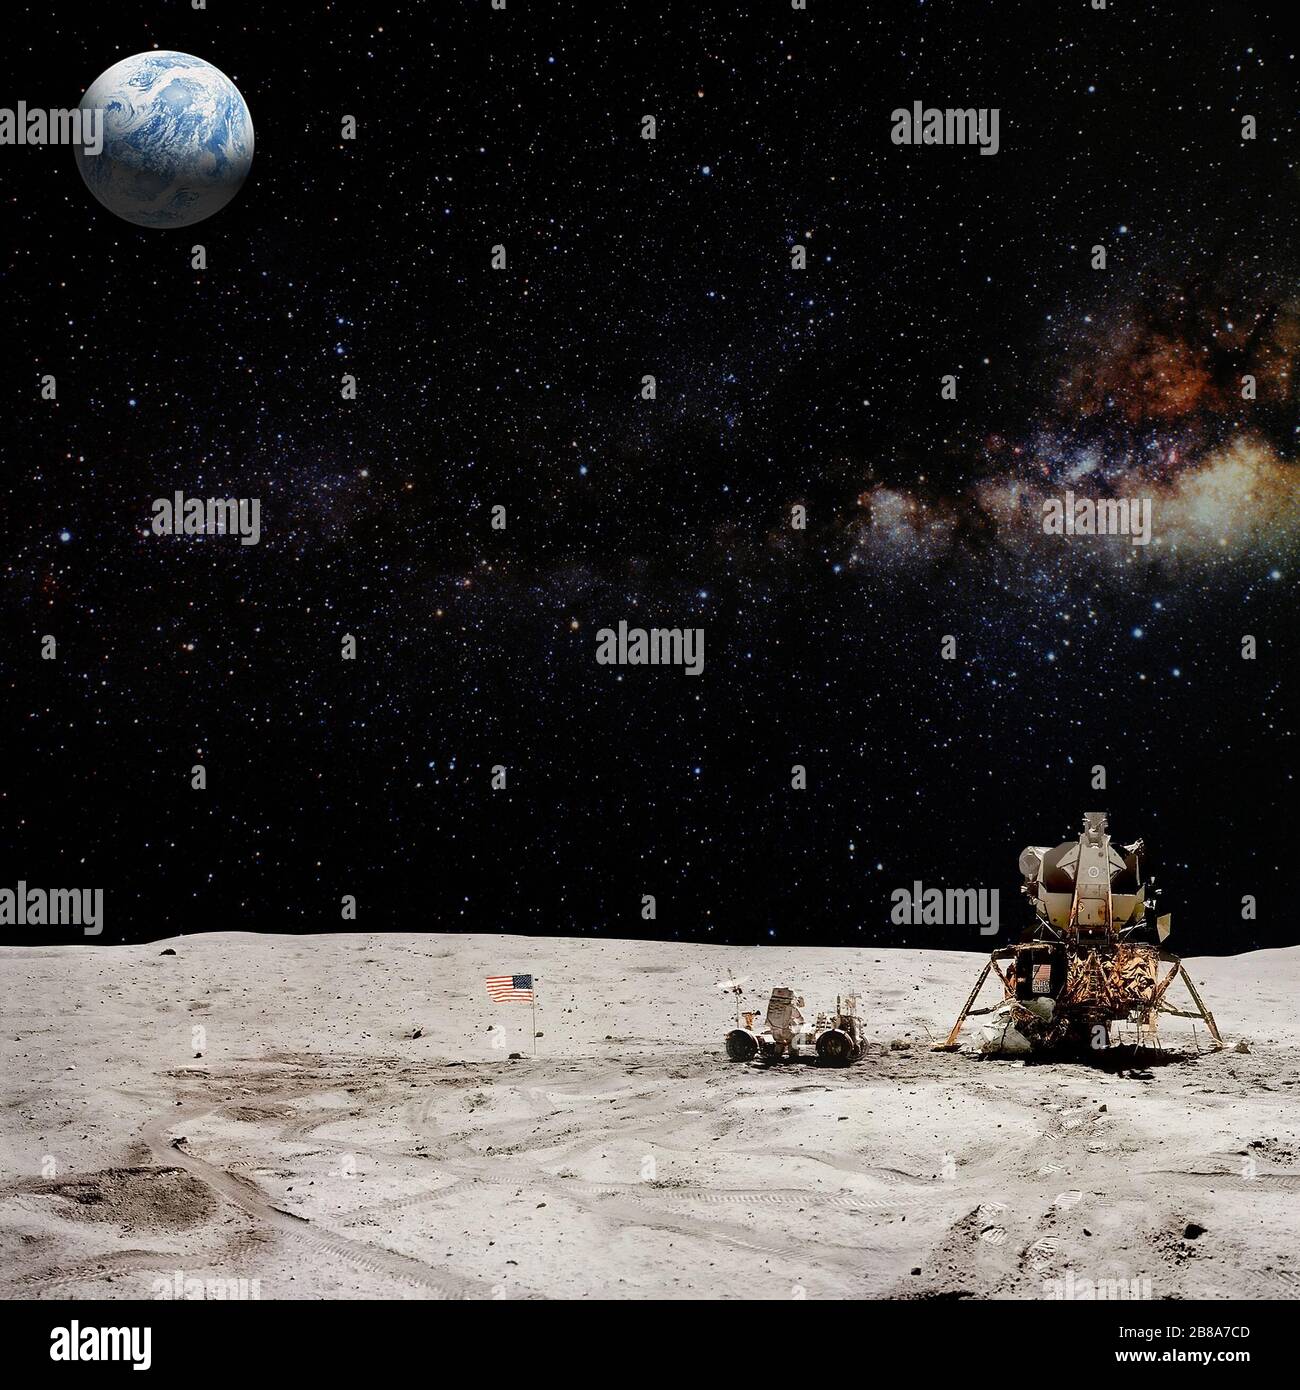 Astronaut auf der Landungsmission für Mond (Mond). Elemente dieses Bildes, das von der NASA eingerichtet wurde. Stockfoto